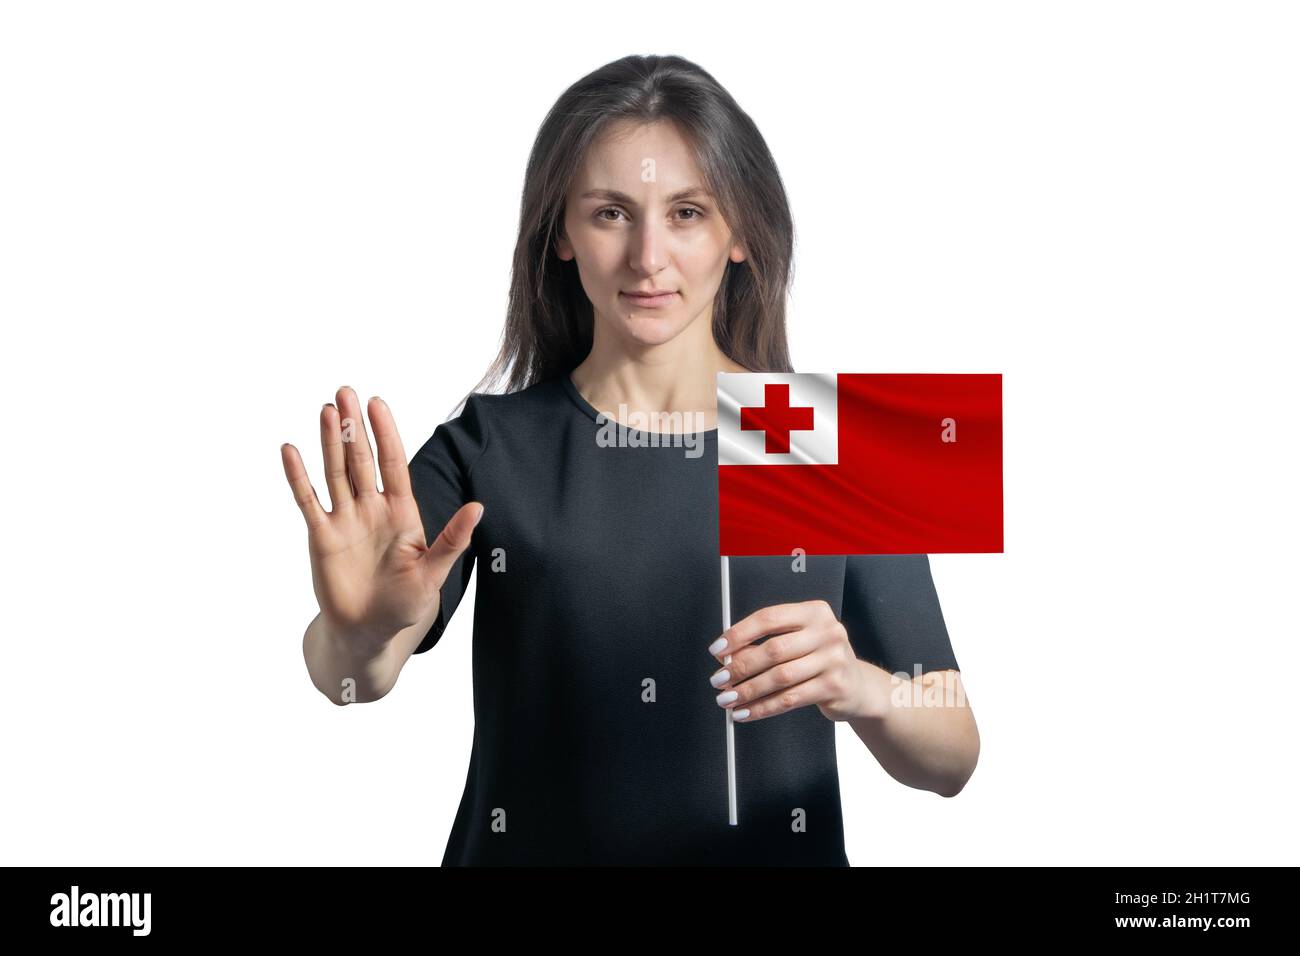 Glückliche junge weiße Frau, die die Flagge von Tonga hält und mit einem ernsten Gesicht ein Hand-Stopp-Schild auf weißem Hintergrund zeigt. Stockfoto